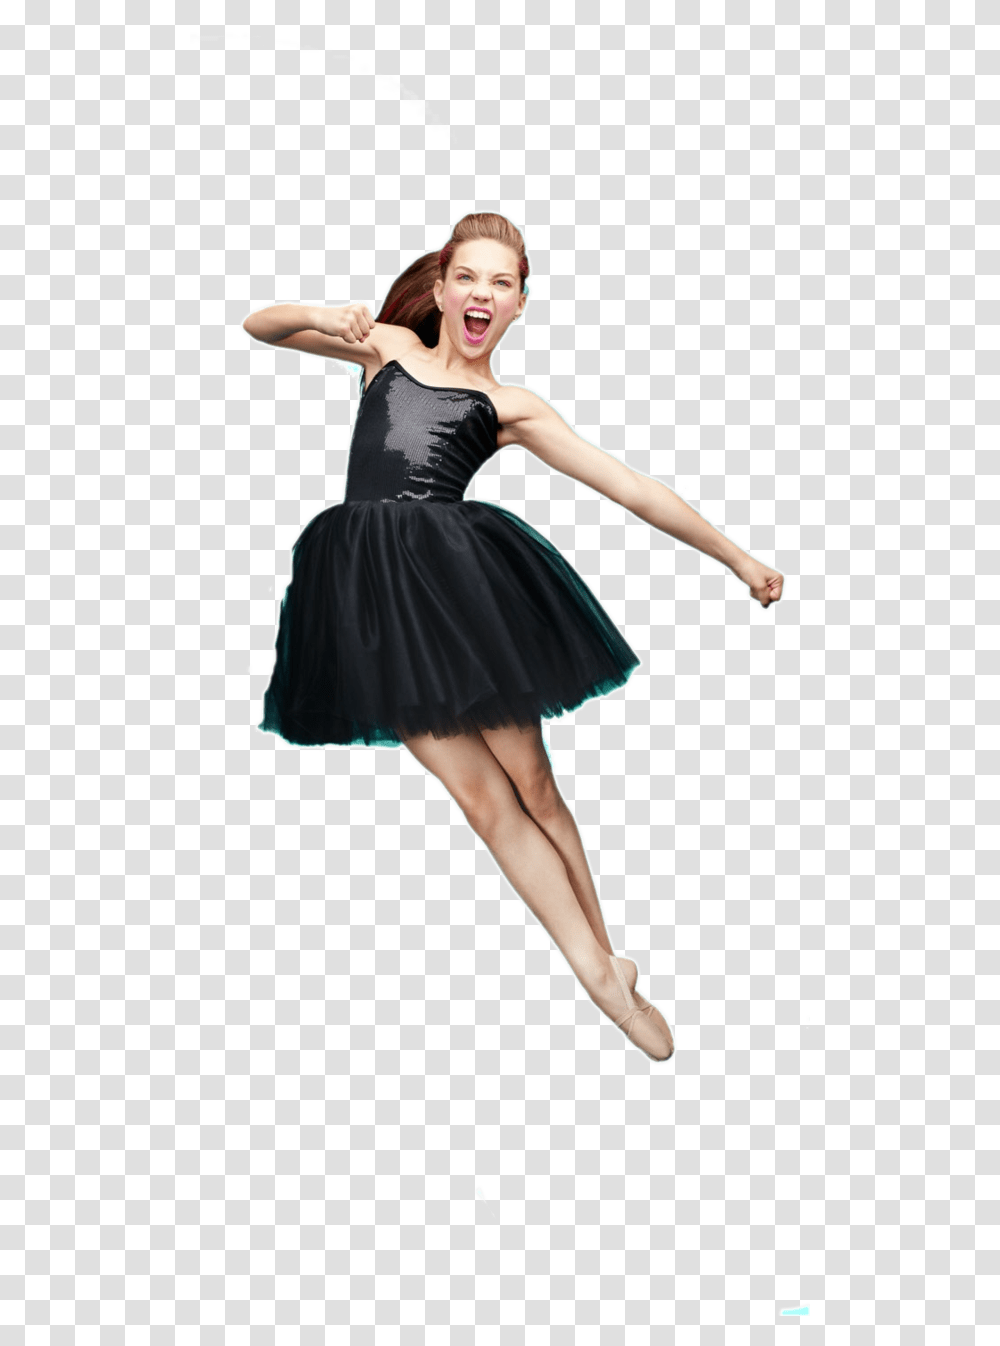 Maddie Ziegler Jump Dance Black Maddie Ziegler, Person, Human, Skirt Transparent Png